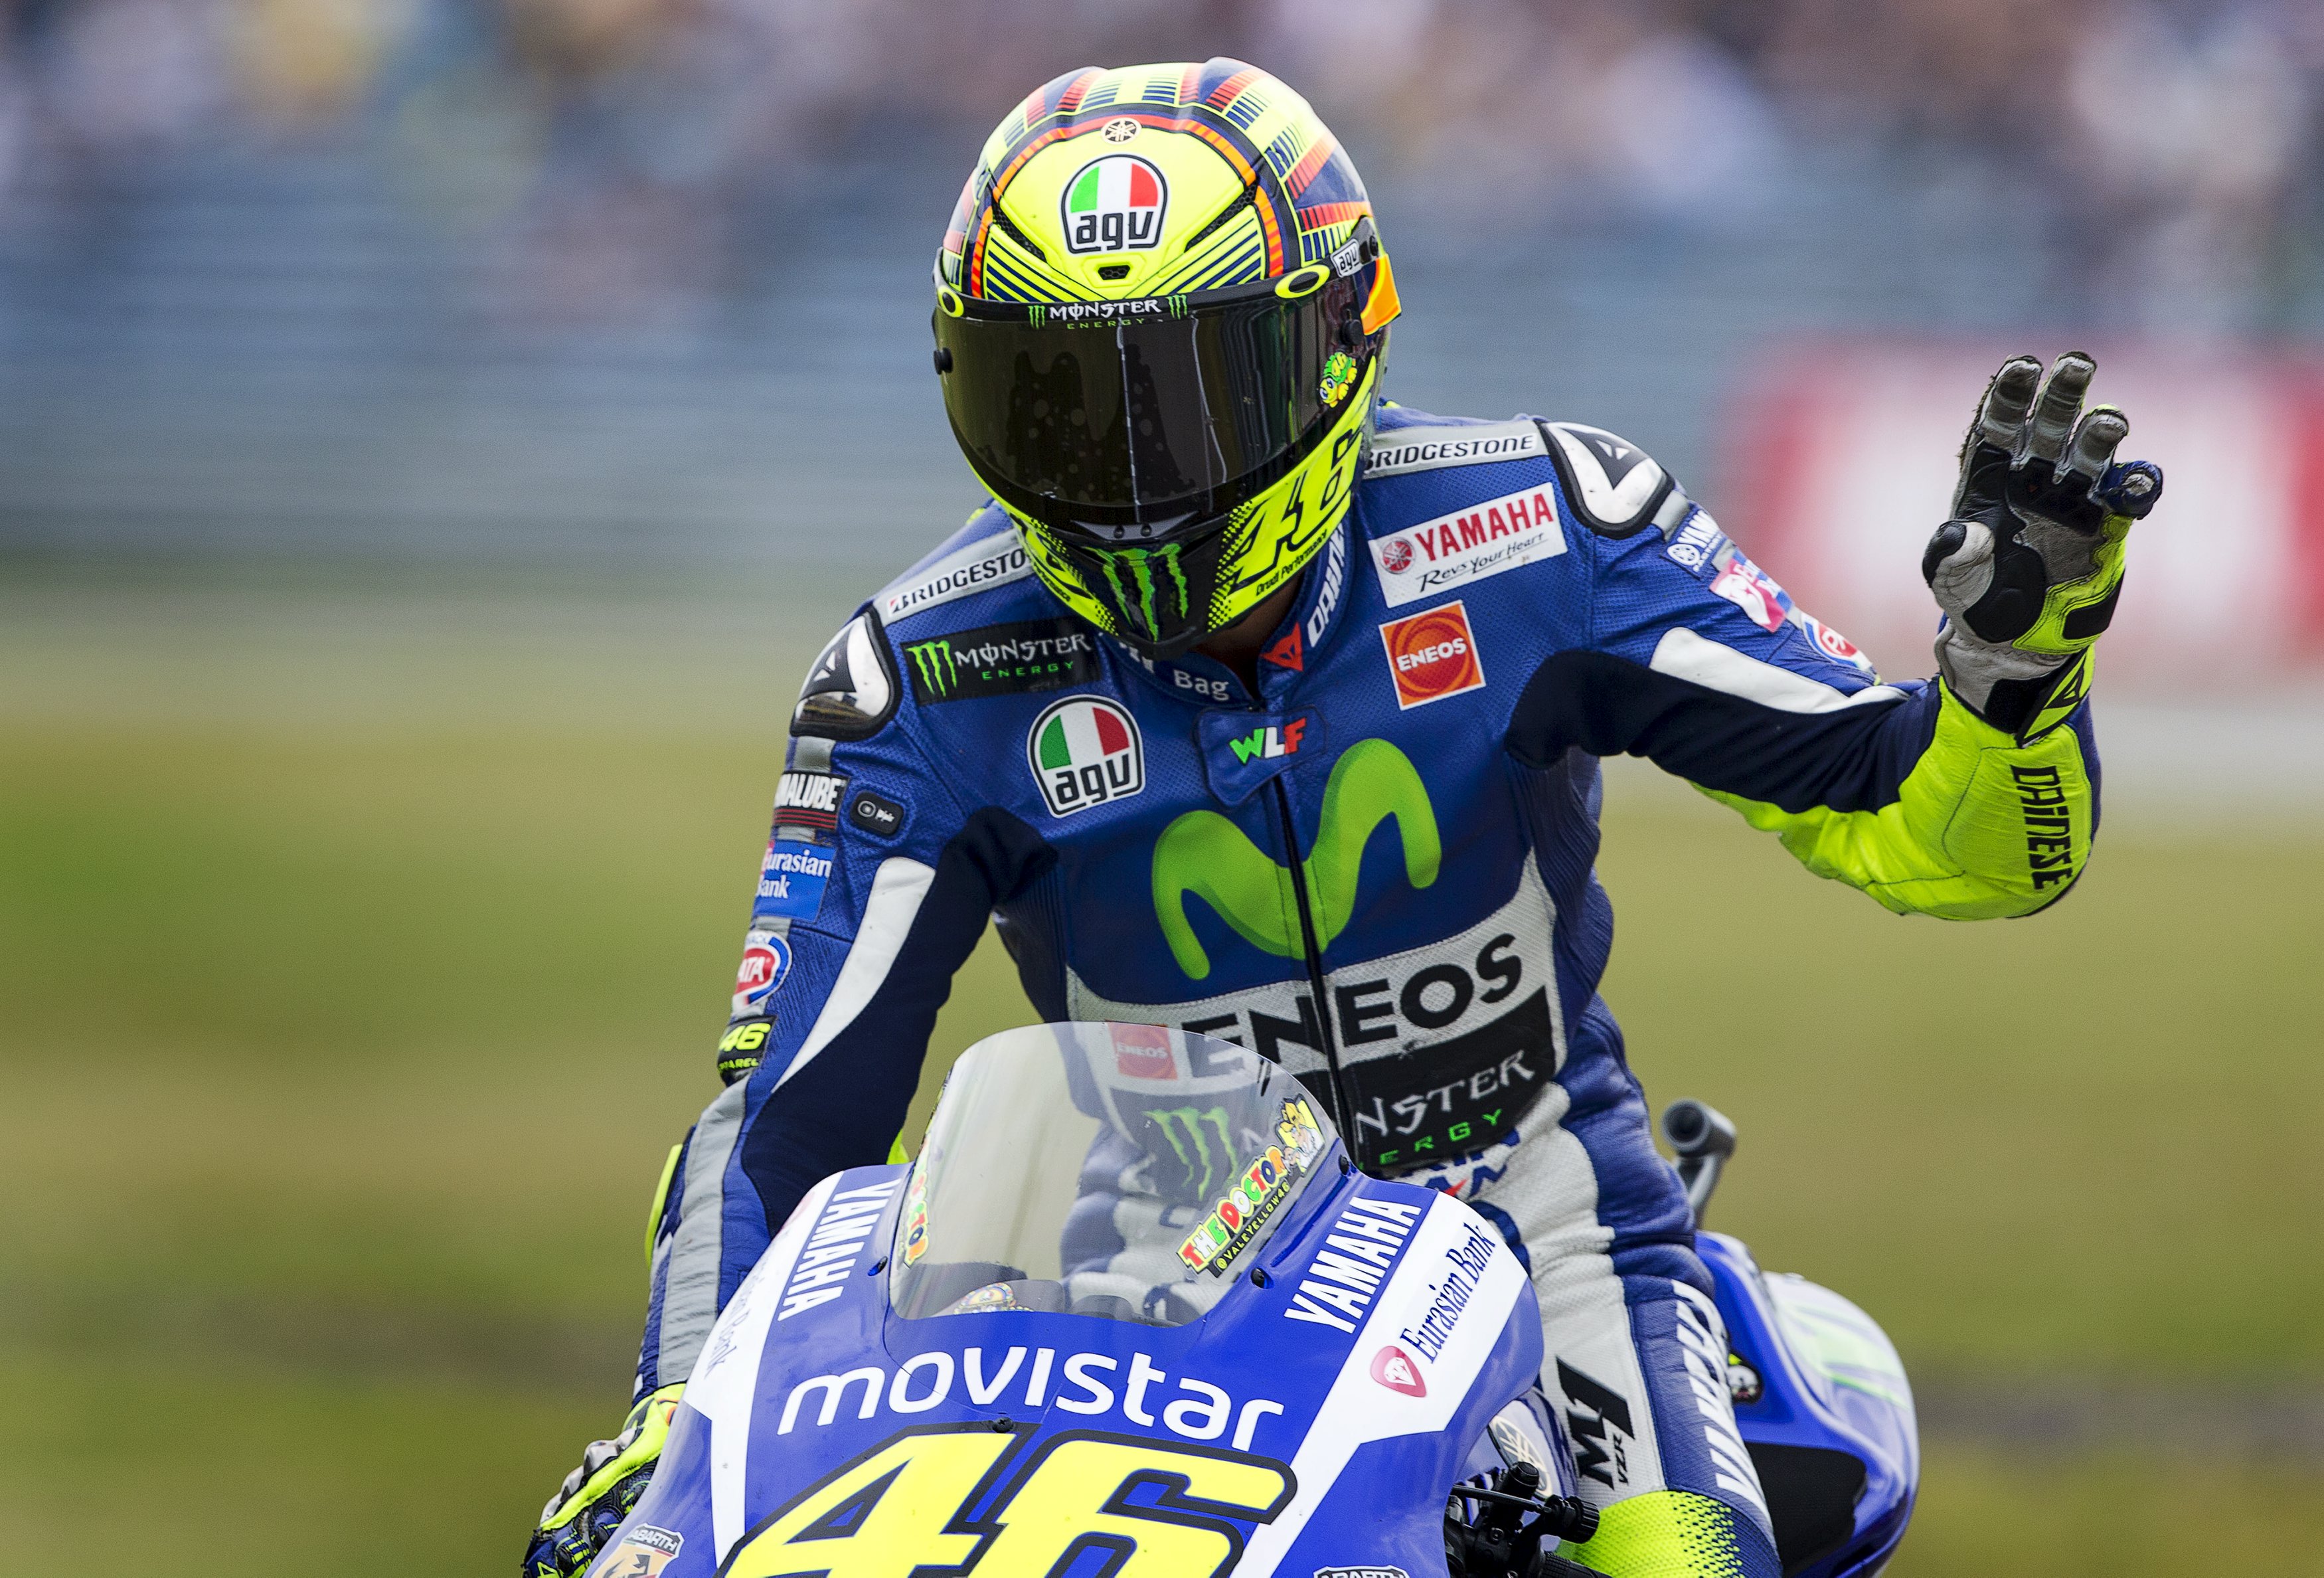 Μoto GP – Assen 2015: Pole position για Rossi, στην πρώτη σειρά της εκκίνησης και ο Marquez